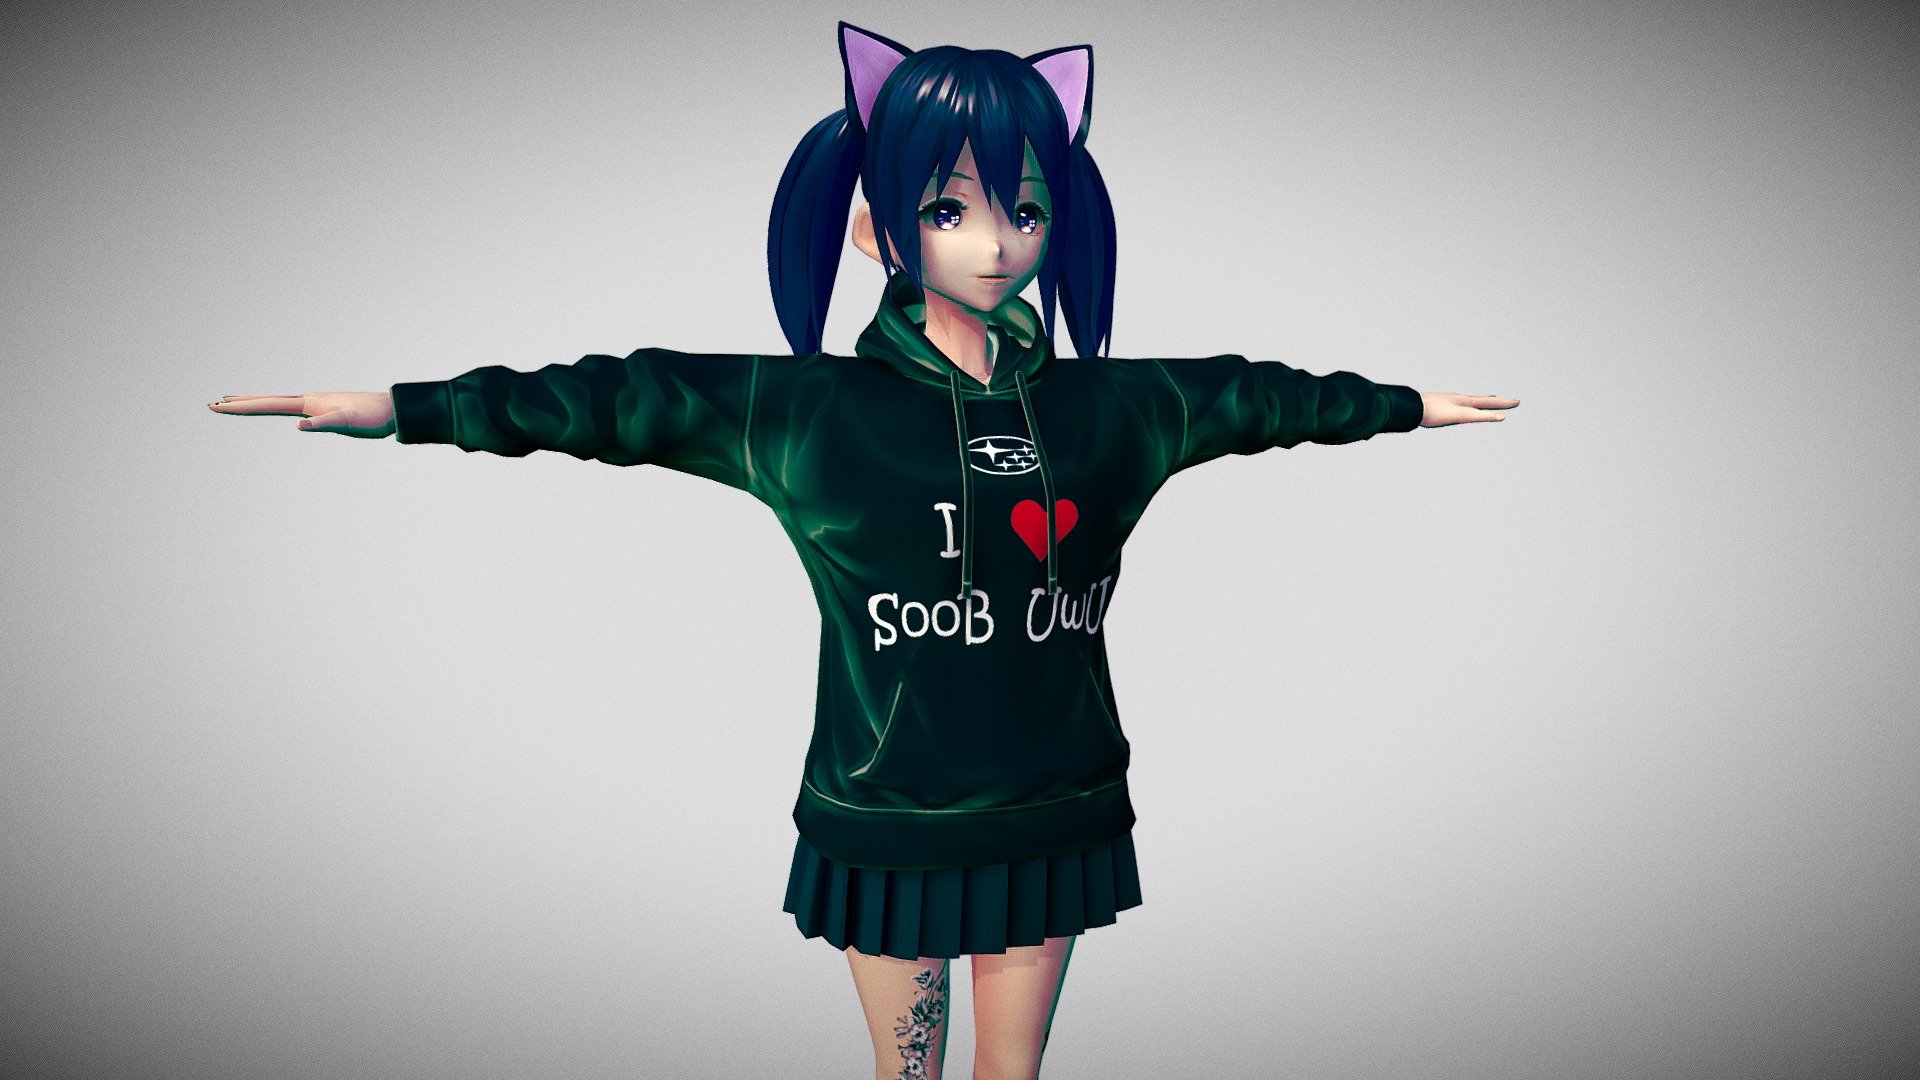 Kitty Girl PCVrchat  Download Free 3D model by Artofant artofant  c7237cf